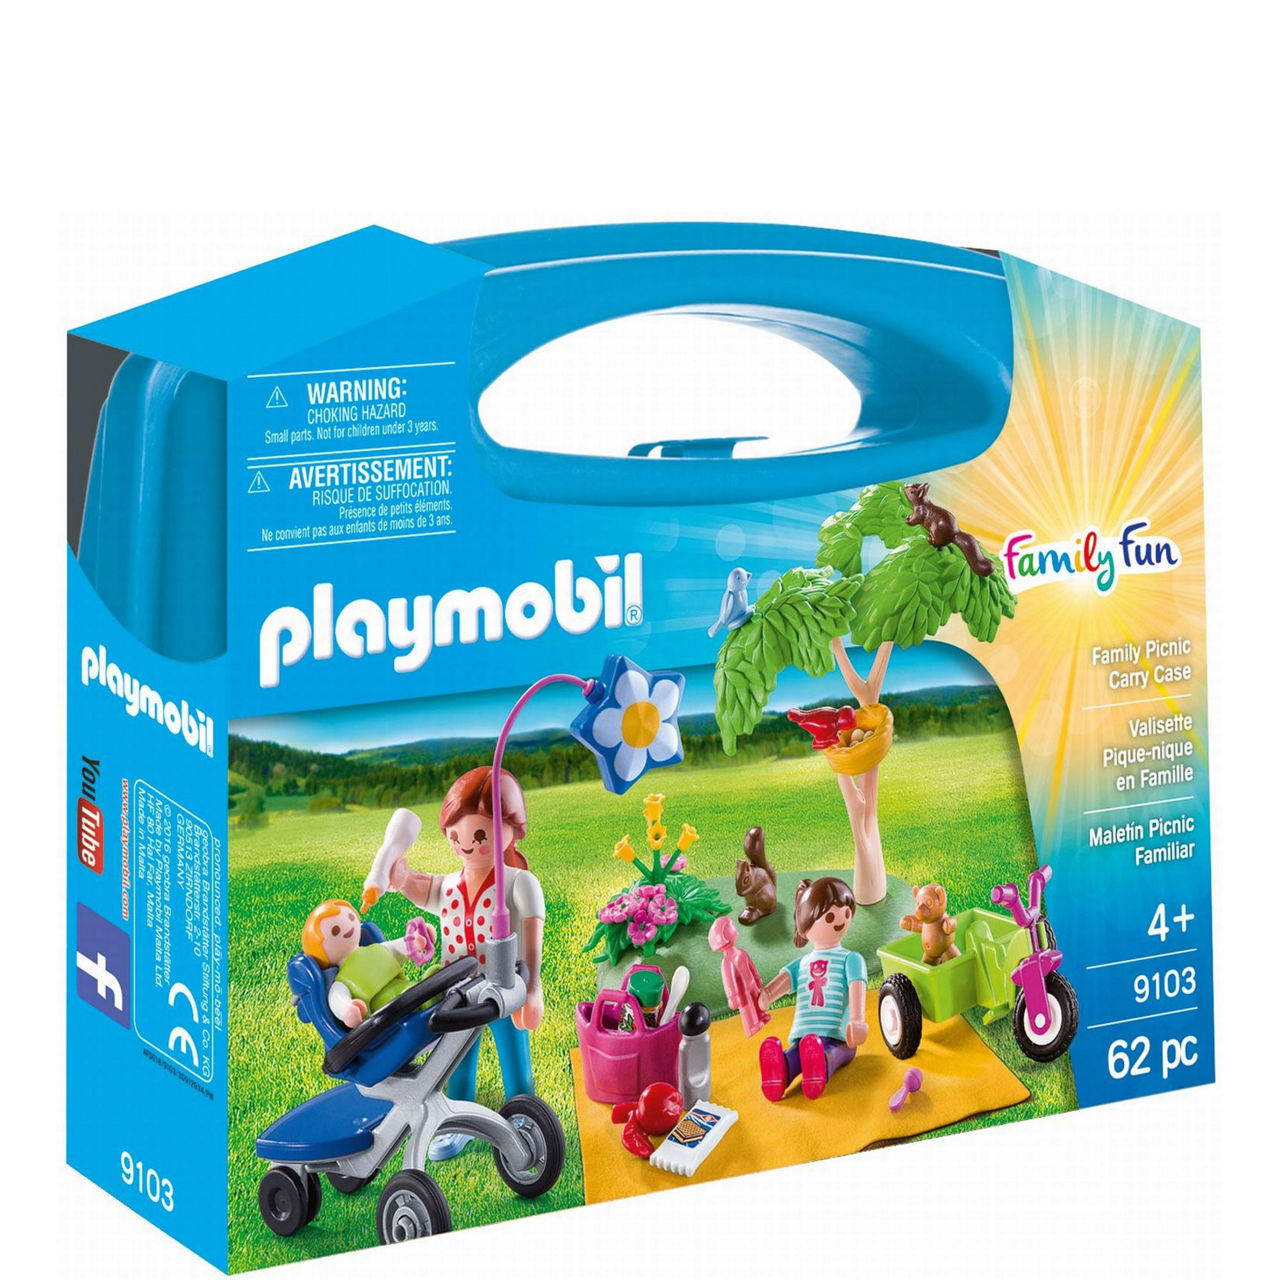 Playmobil Set: 70281 - Adventure Playground - Klickypedia